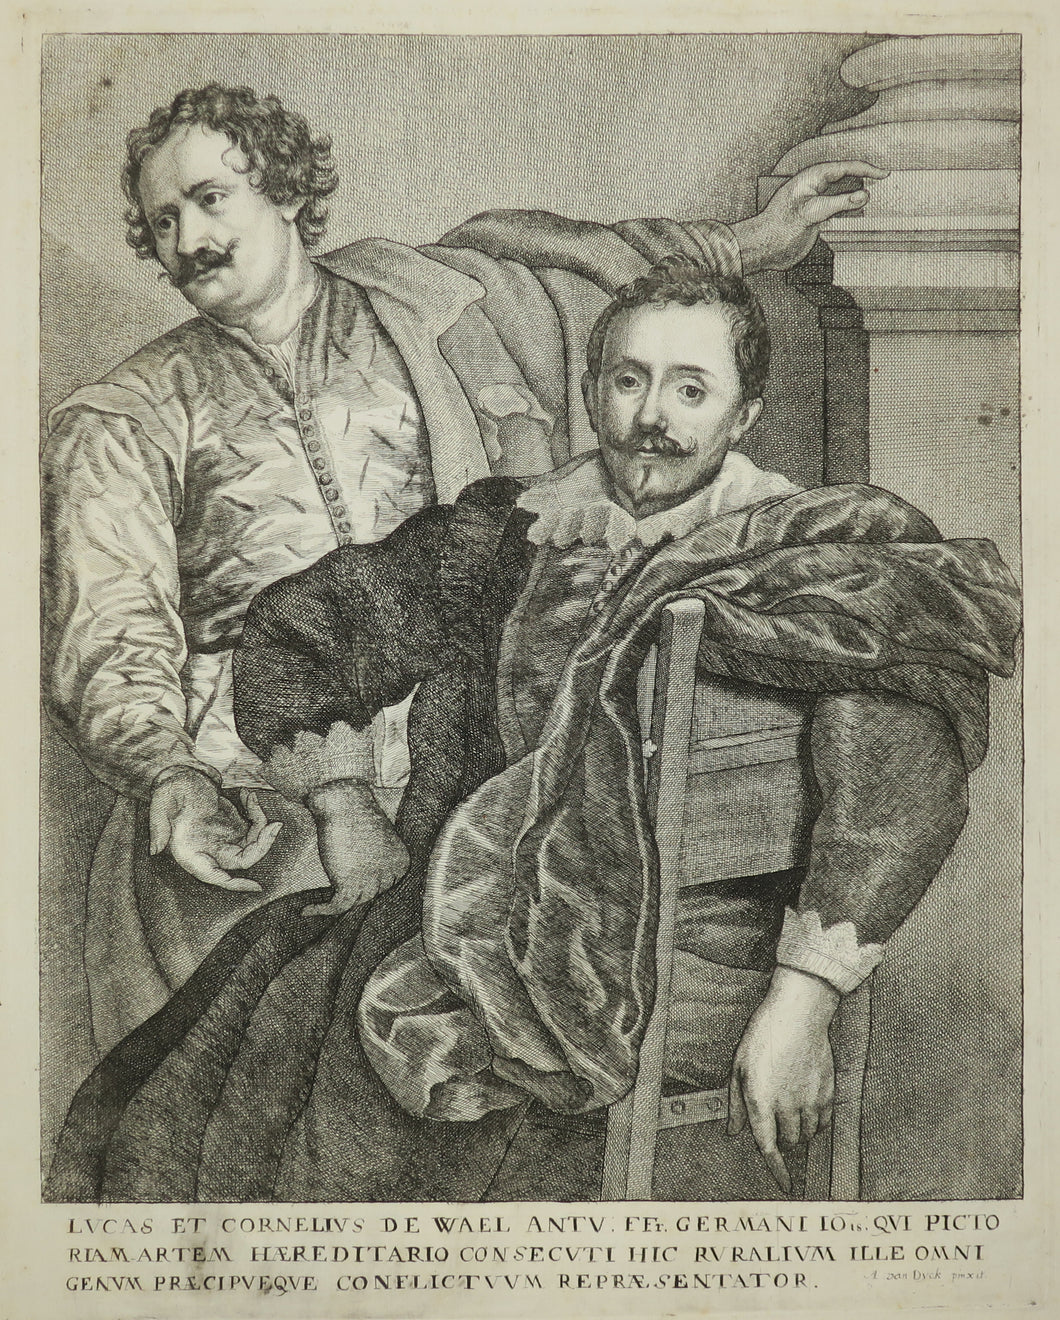 Lucas et Cornelius de Wael.